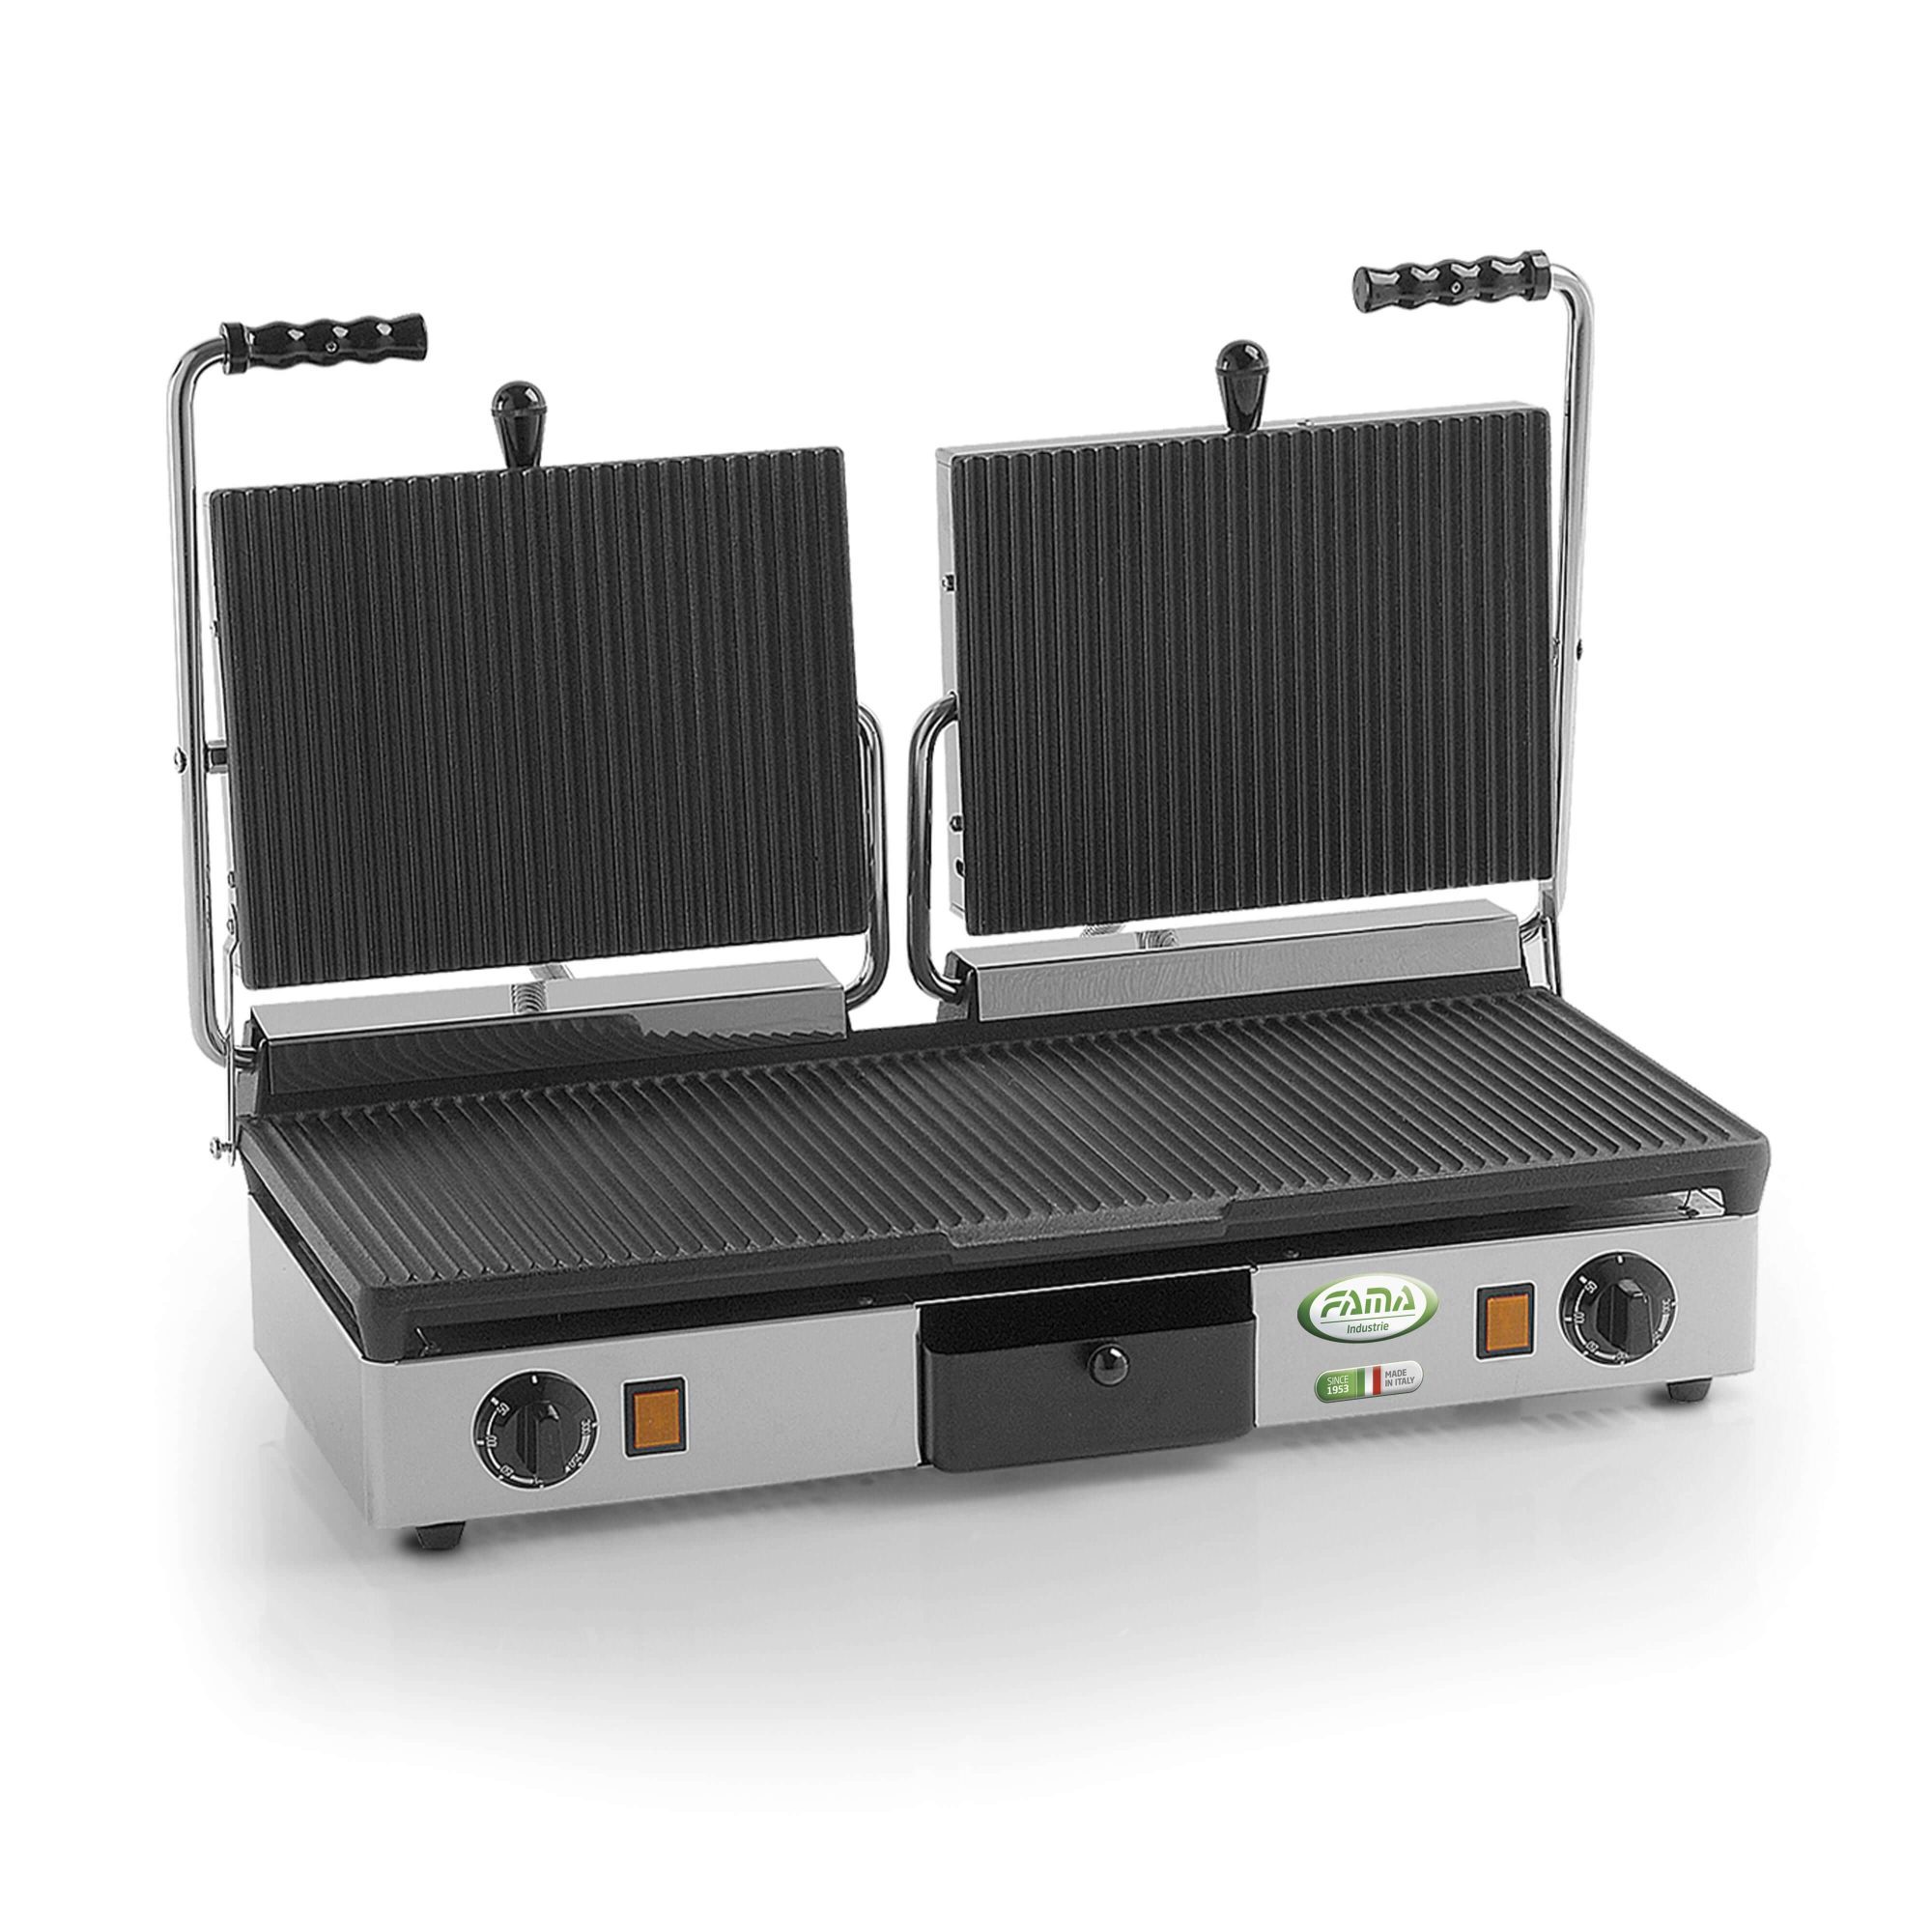 Piastra PDR3000 – Fama Industrie – attrezzature professionali per